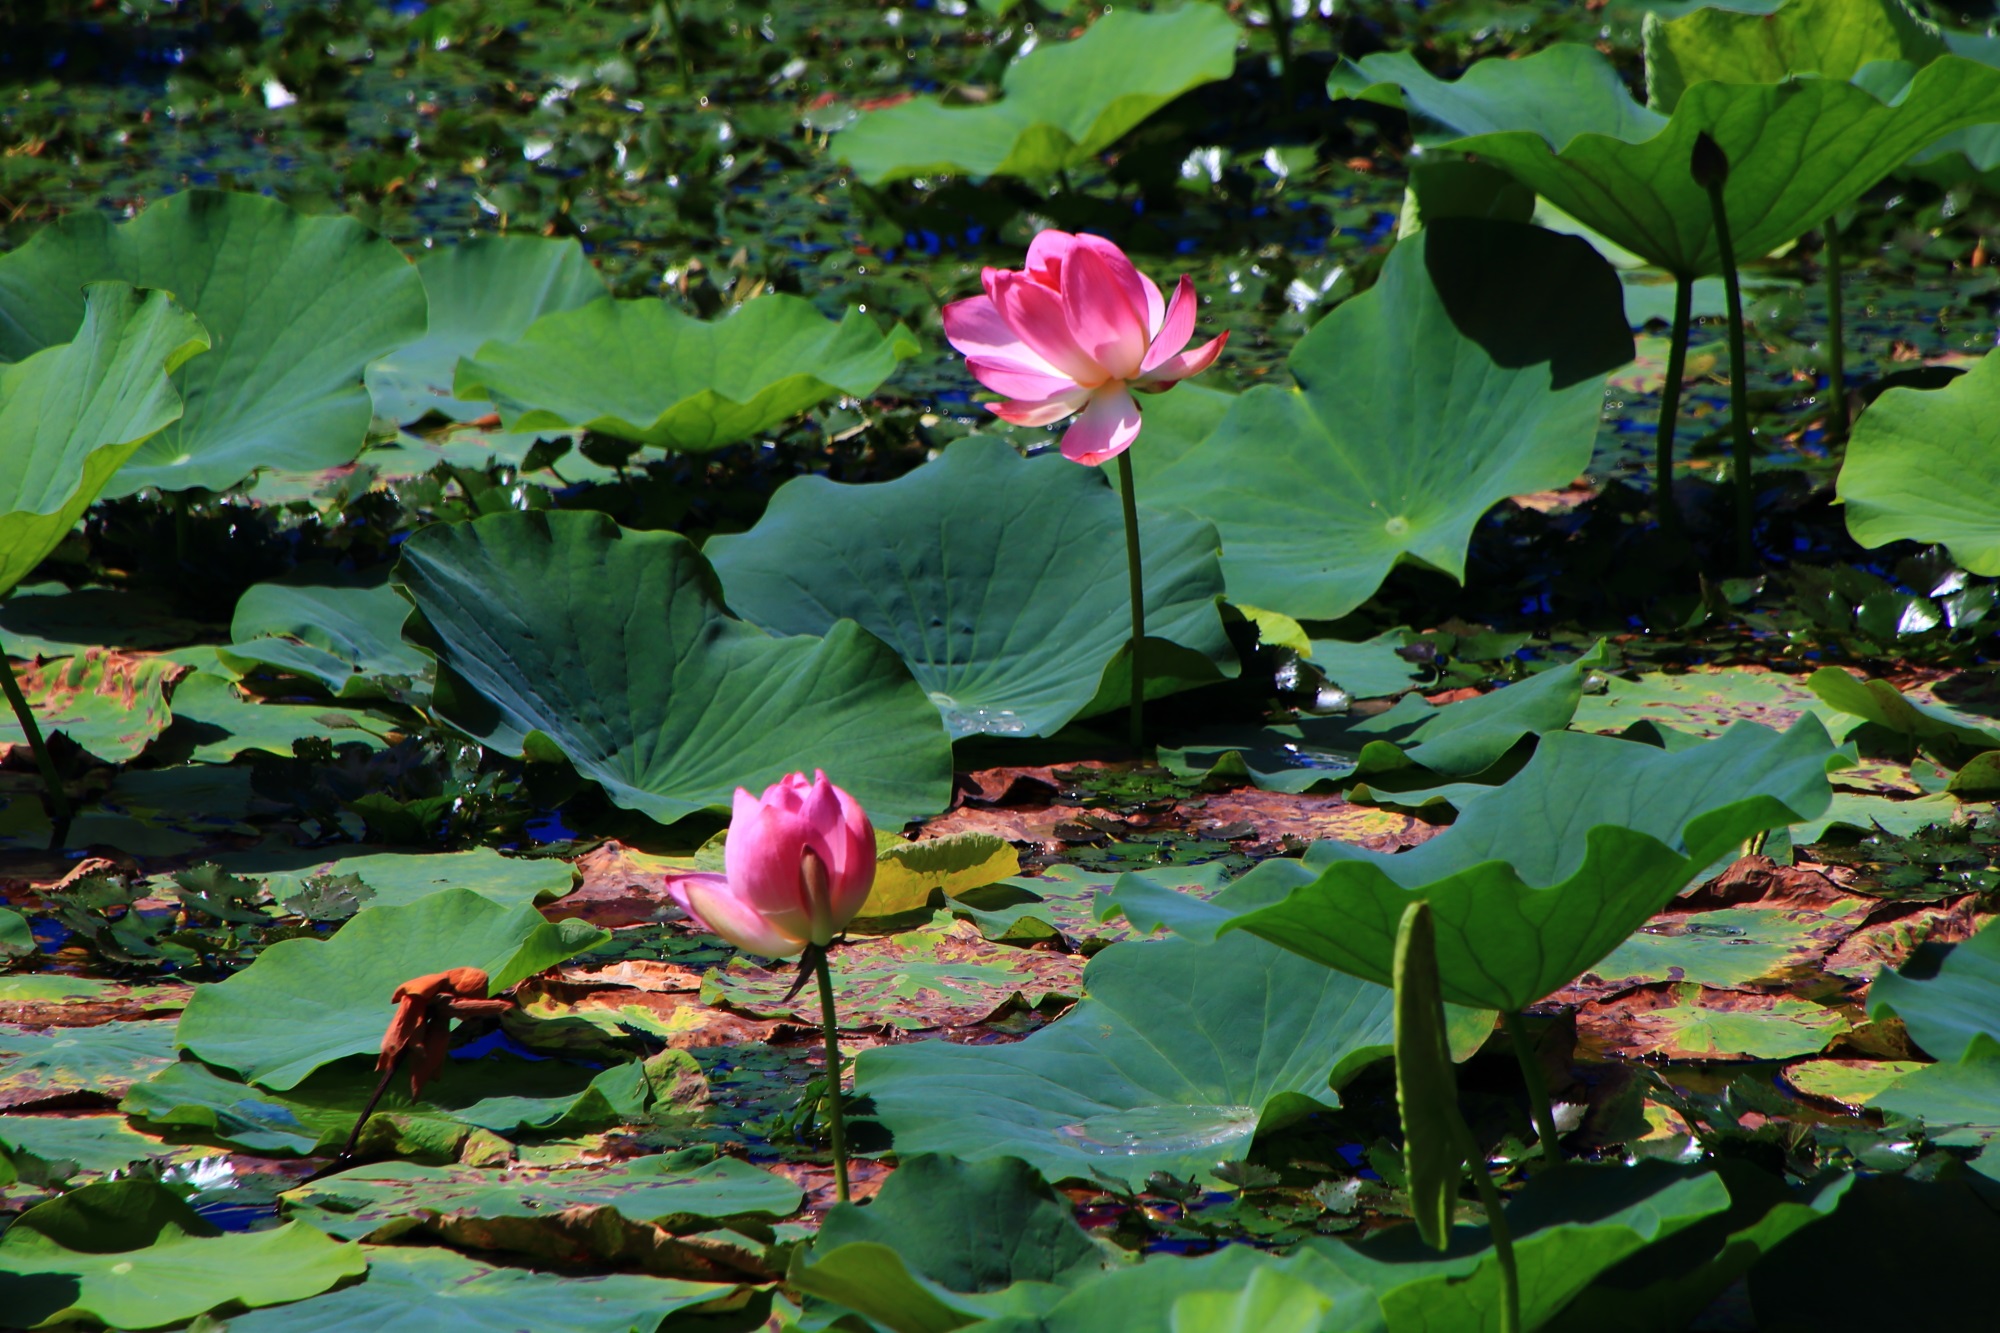 鉢植えの蓮とは当然ながら雰囲気がかなり異なる大覚寺の大沢池の自然の蓮